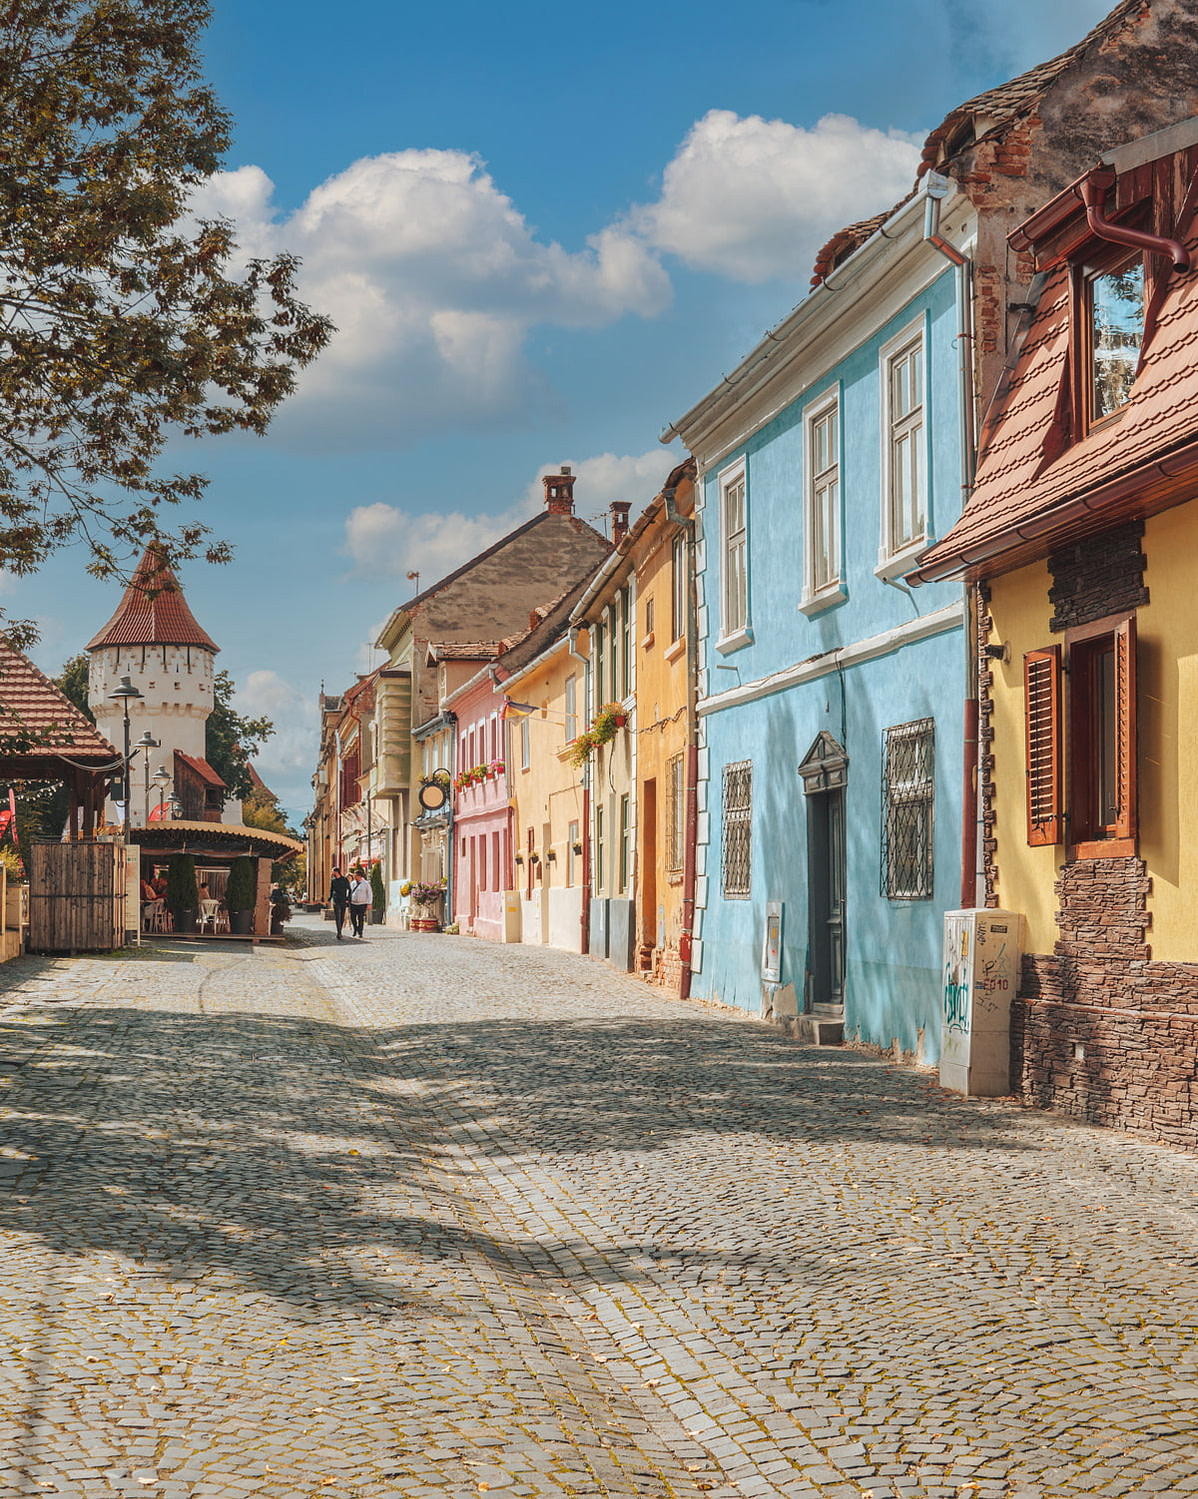 Most beautiful street in Sibiu